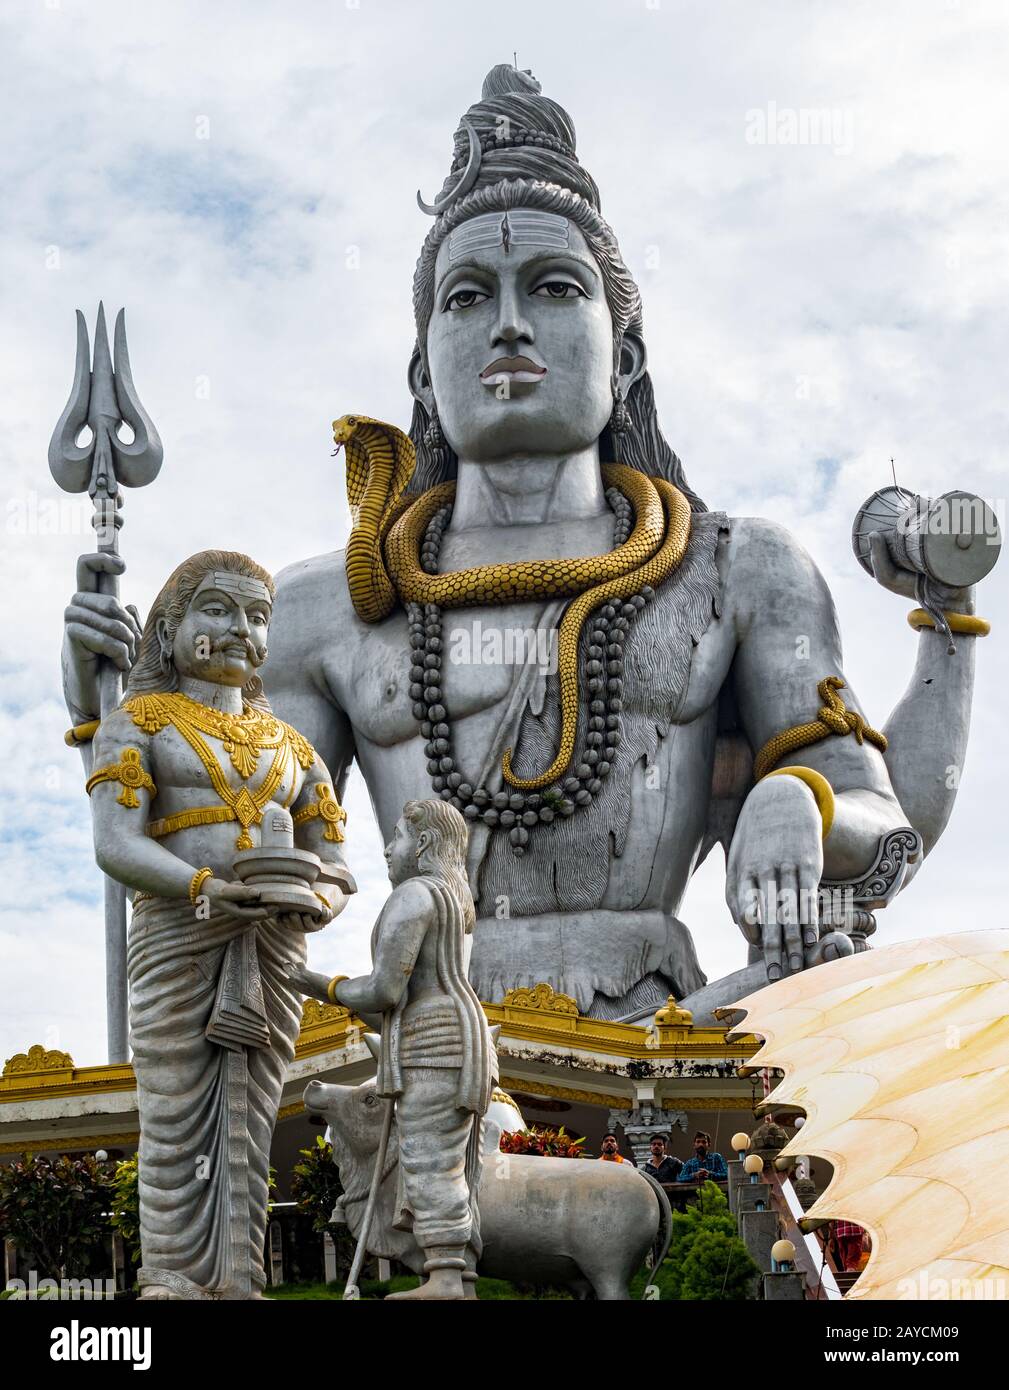 La Mitología Hindú Señor Shiva estatua, meditando en la Pose de loto con la serpiente Trident alrededor del cuello mientras ravana dar shivling a Brahmin niño en primer plano Foto de stock